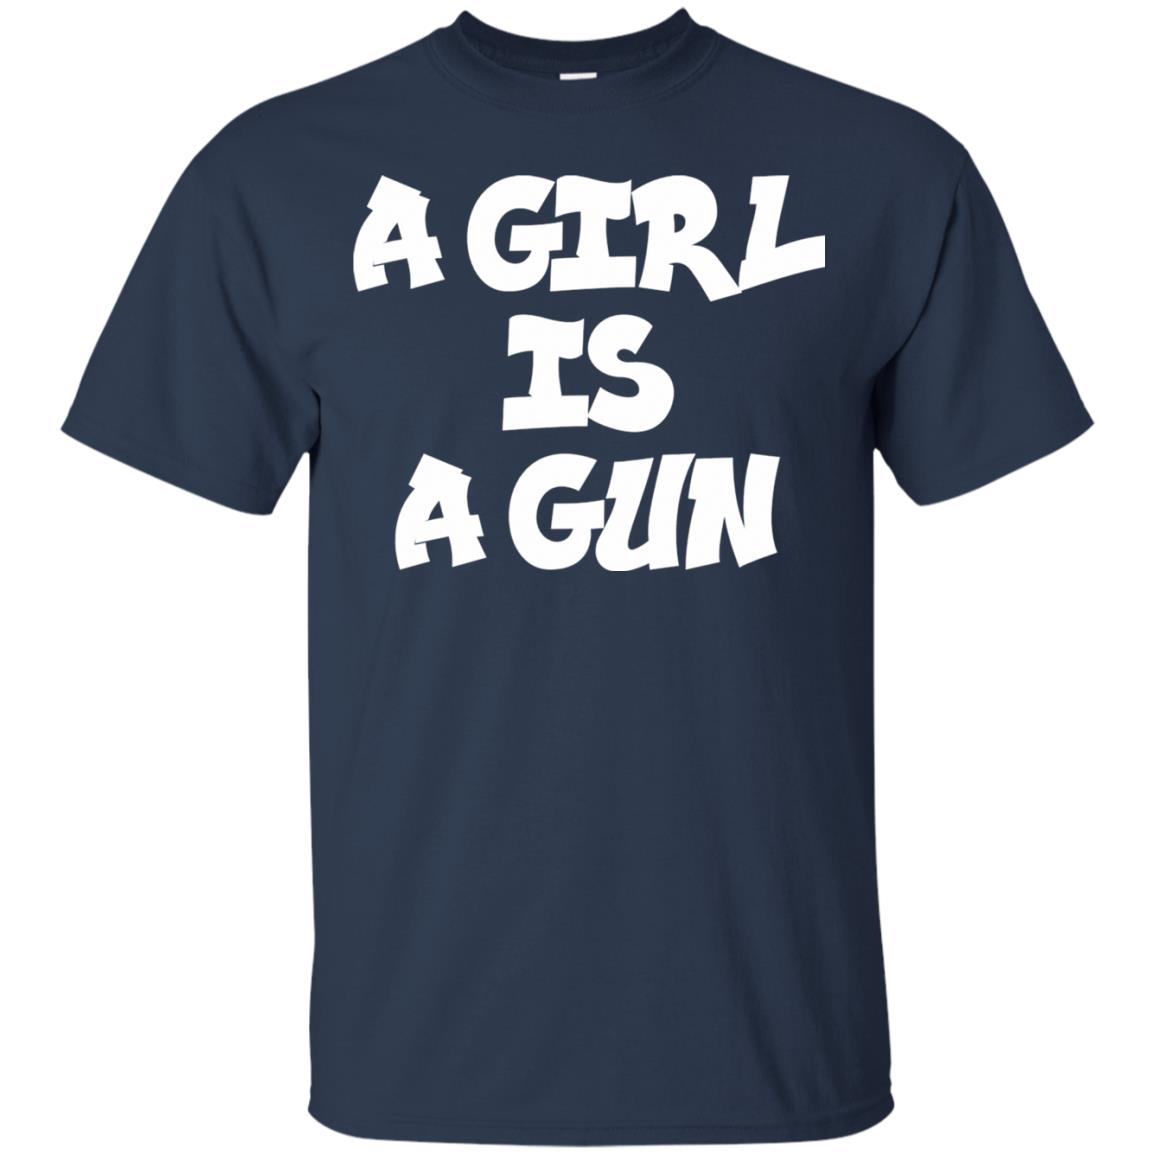 a girl is a gun t shirt - navy blue